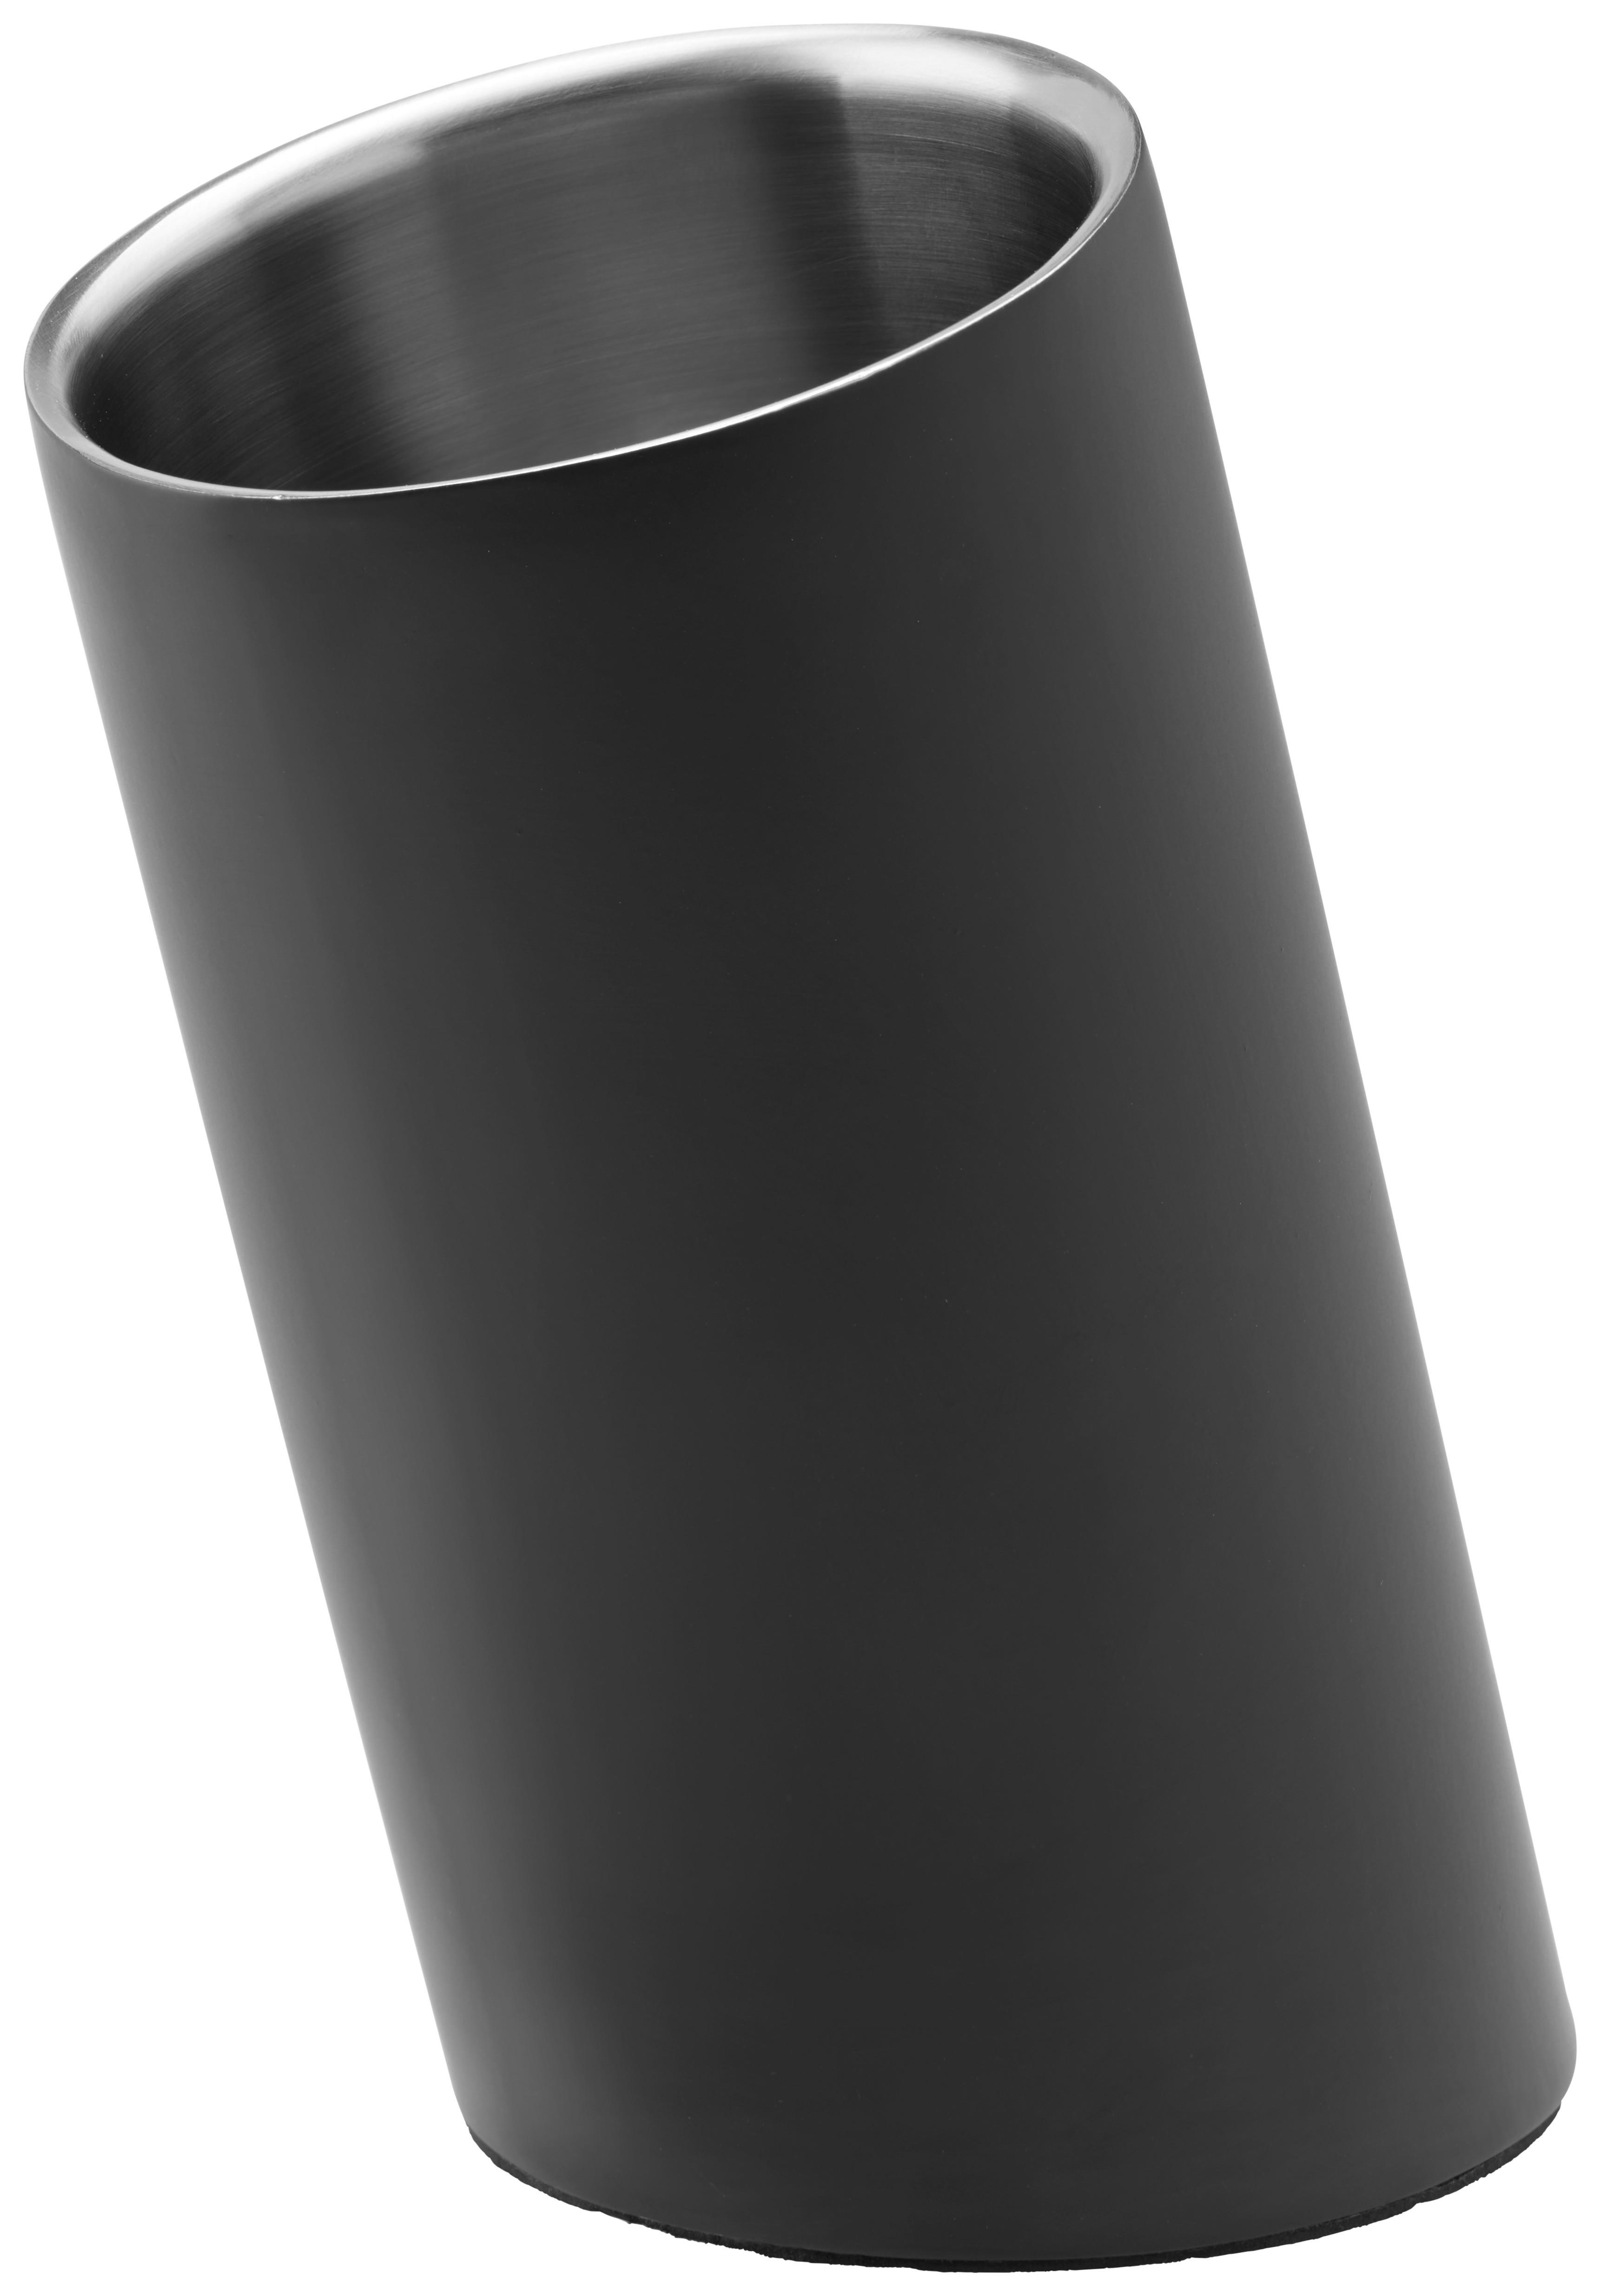 Chladič Na Víno Glamour - černá, Moderní, kov/plast (12/23,5cm) - Premium Living